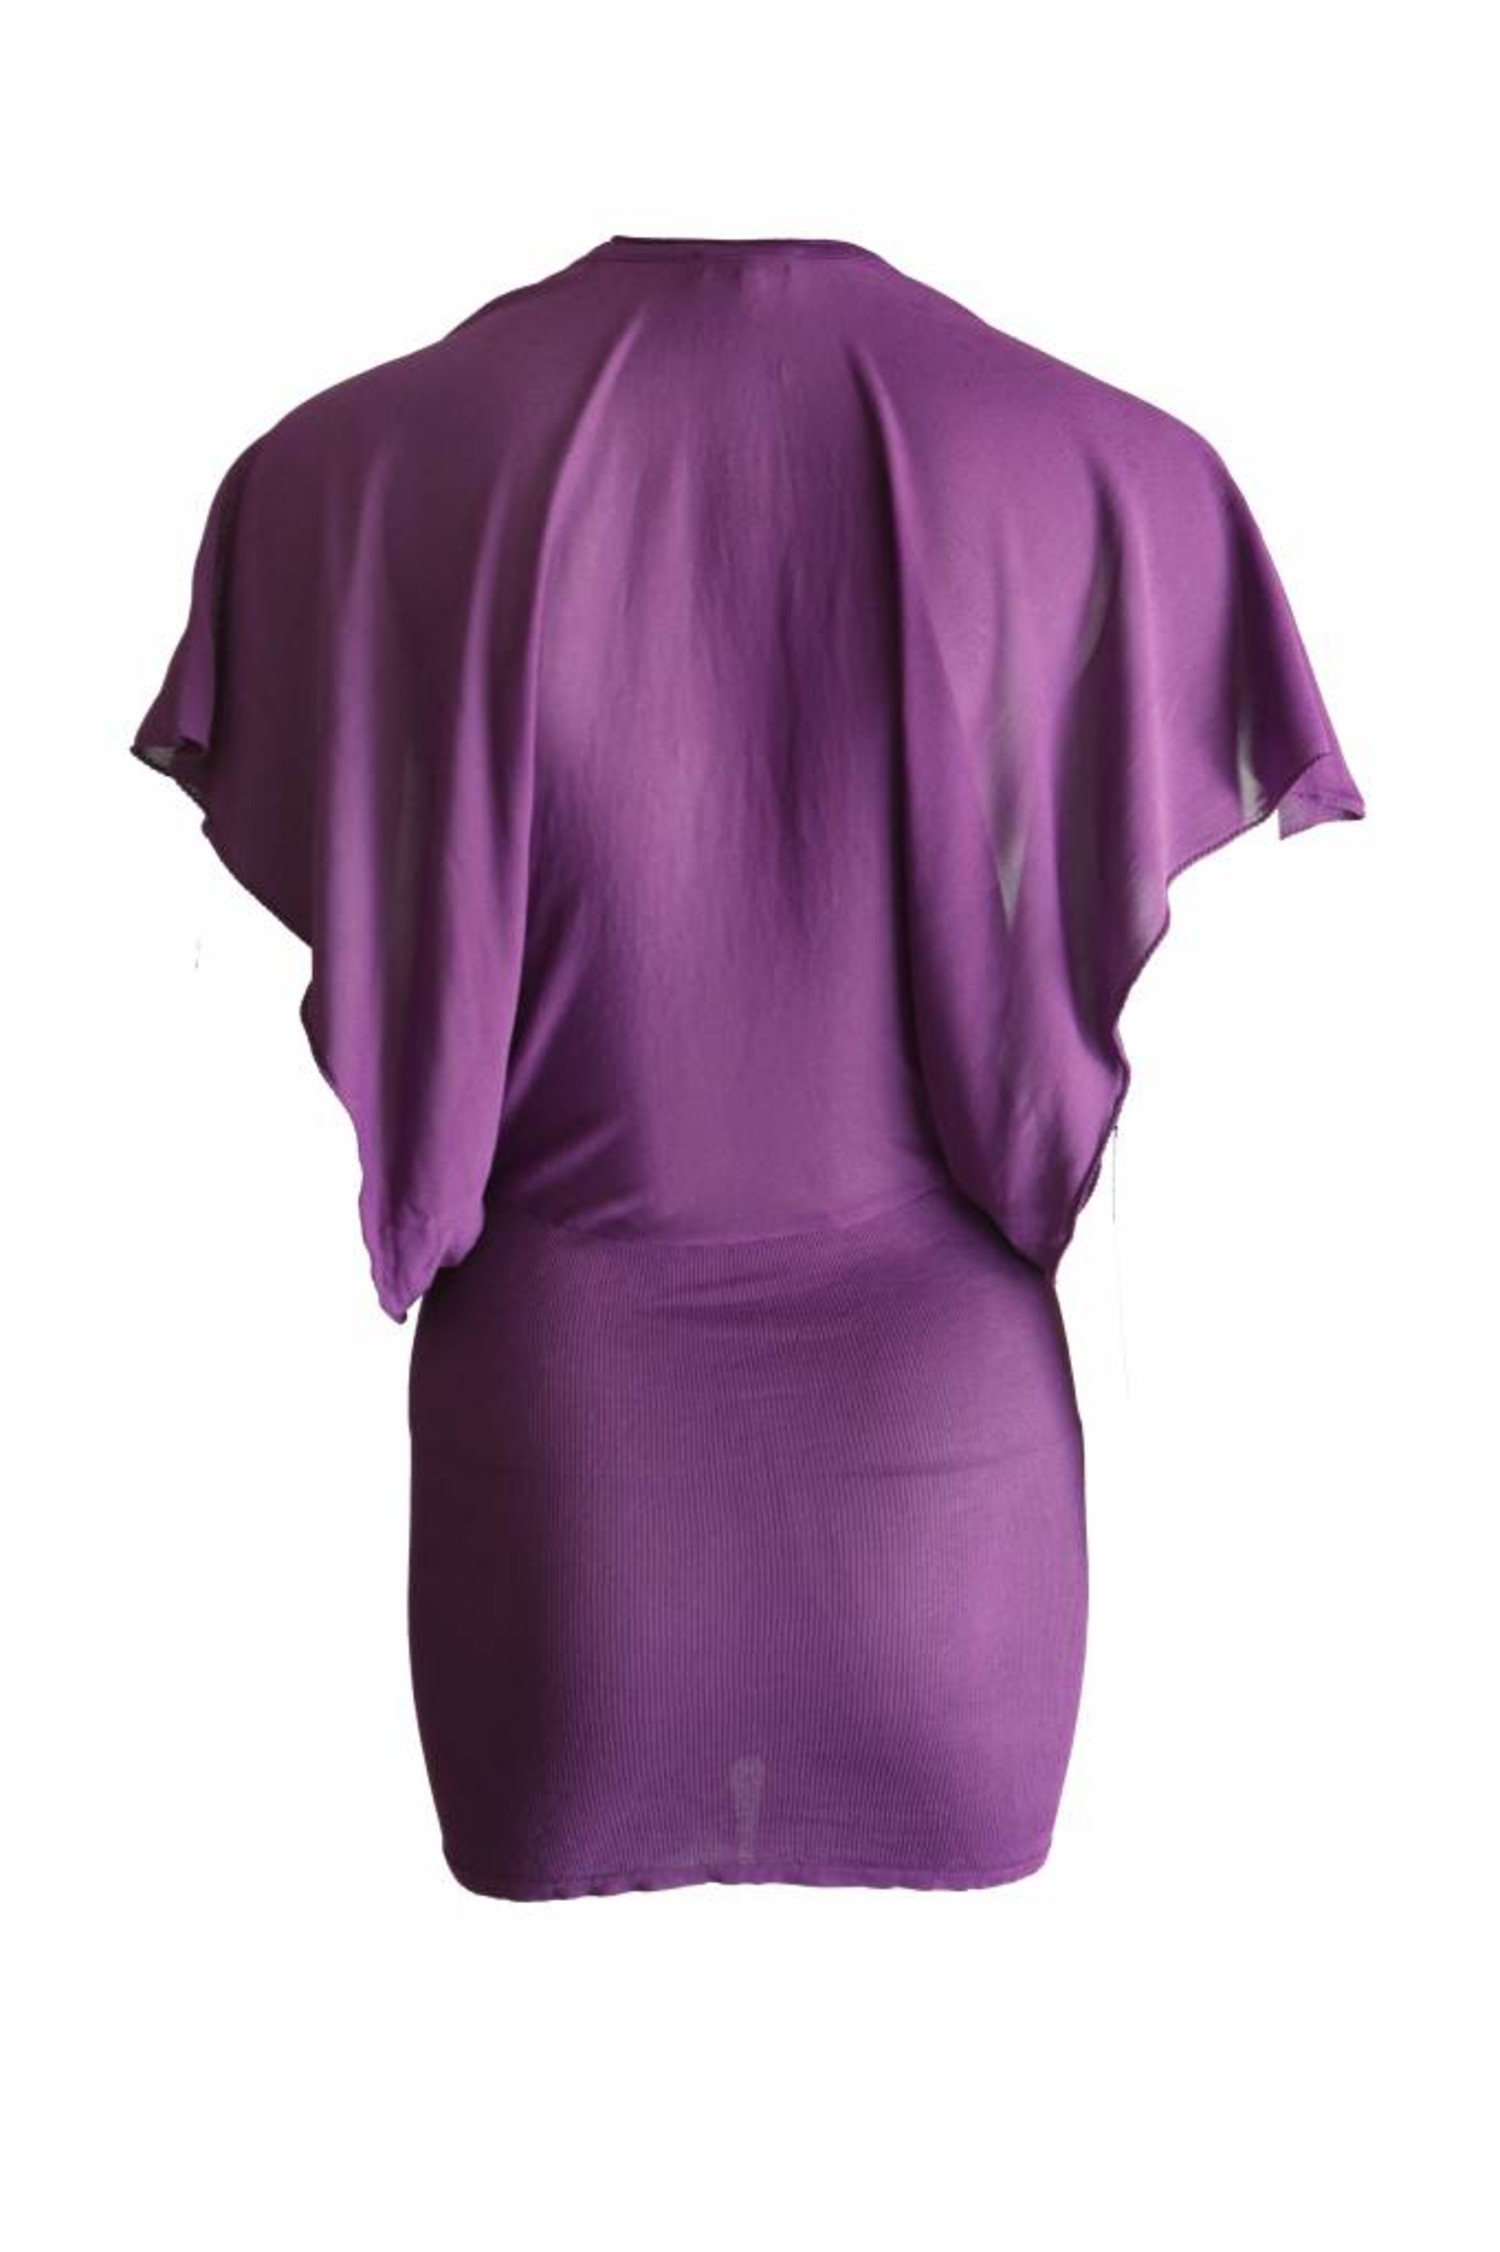 kwaliteit Het pad echtgenoot Etro Etro, paarse jurk met fladder mouwen in maat 46 IT/M. - Unique  Designer Pieces